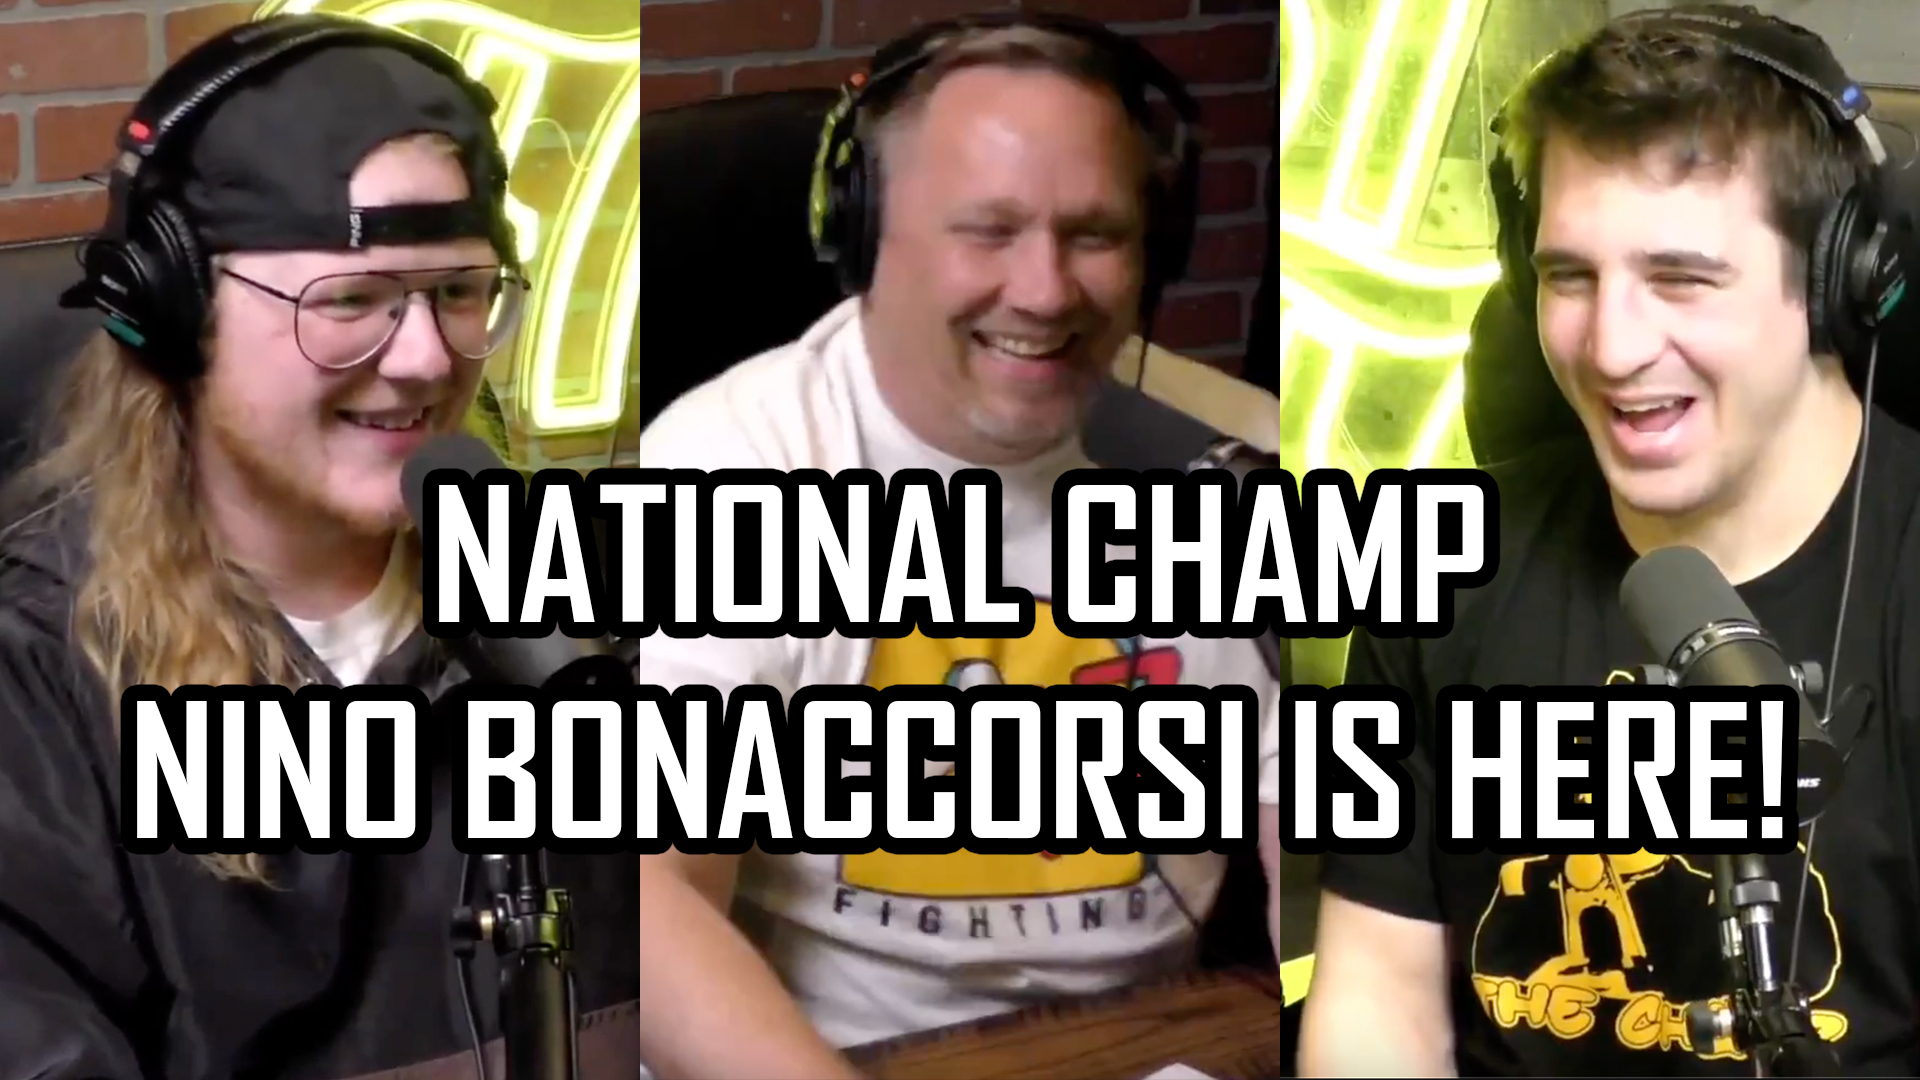 nino-bonaccorsi-thumbnail-247-fighting-championships-podcast